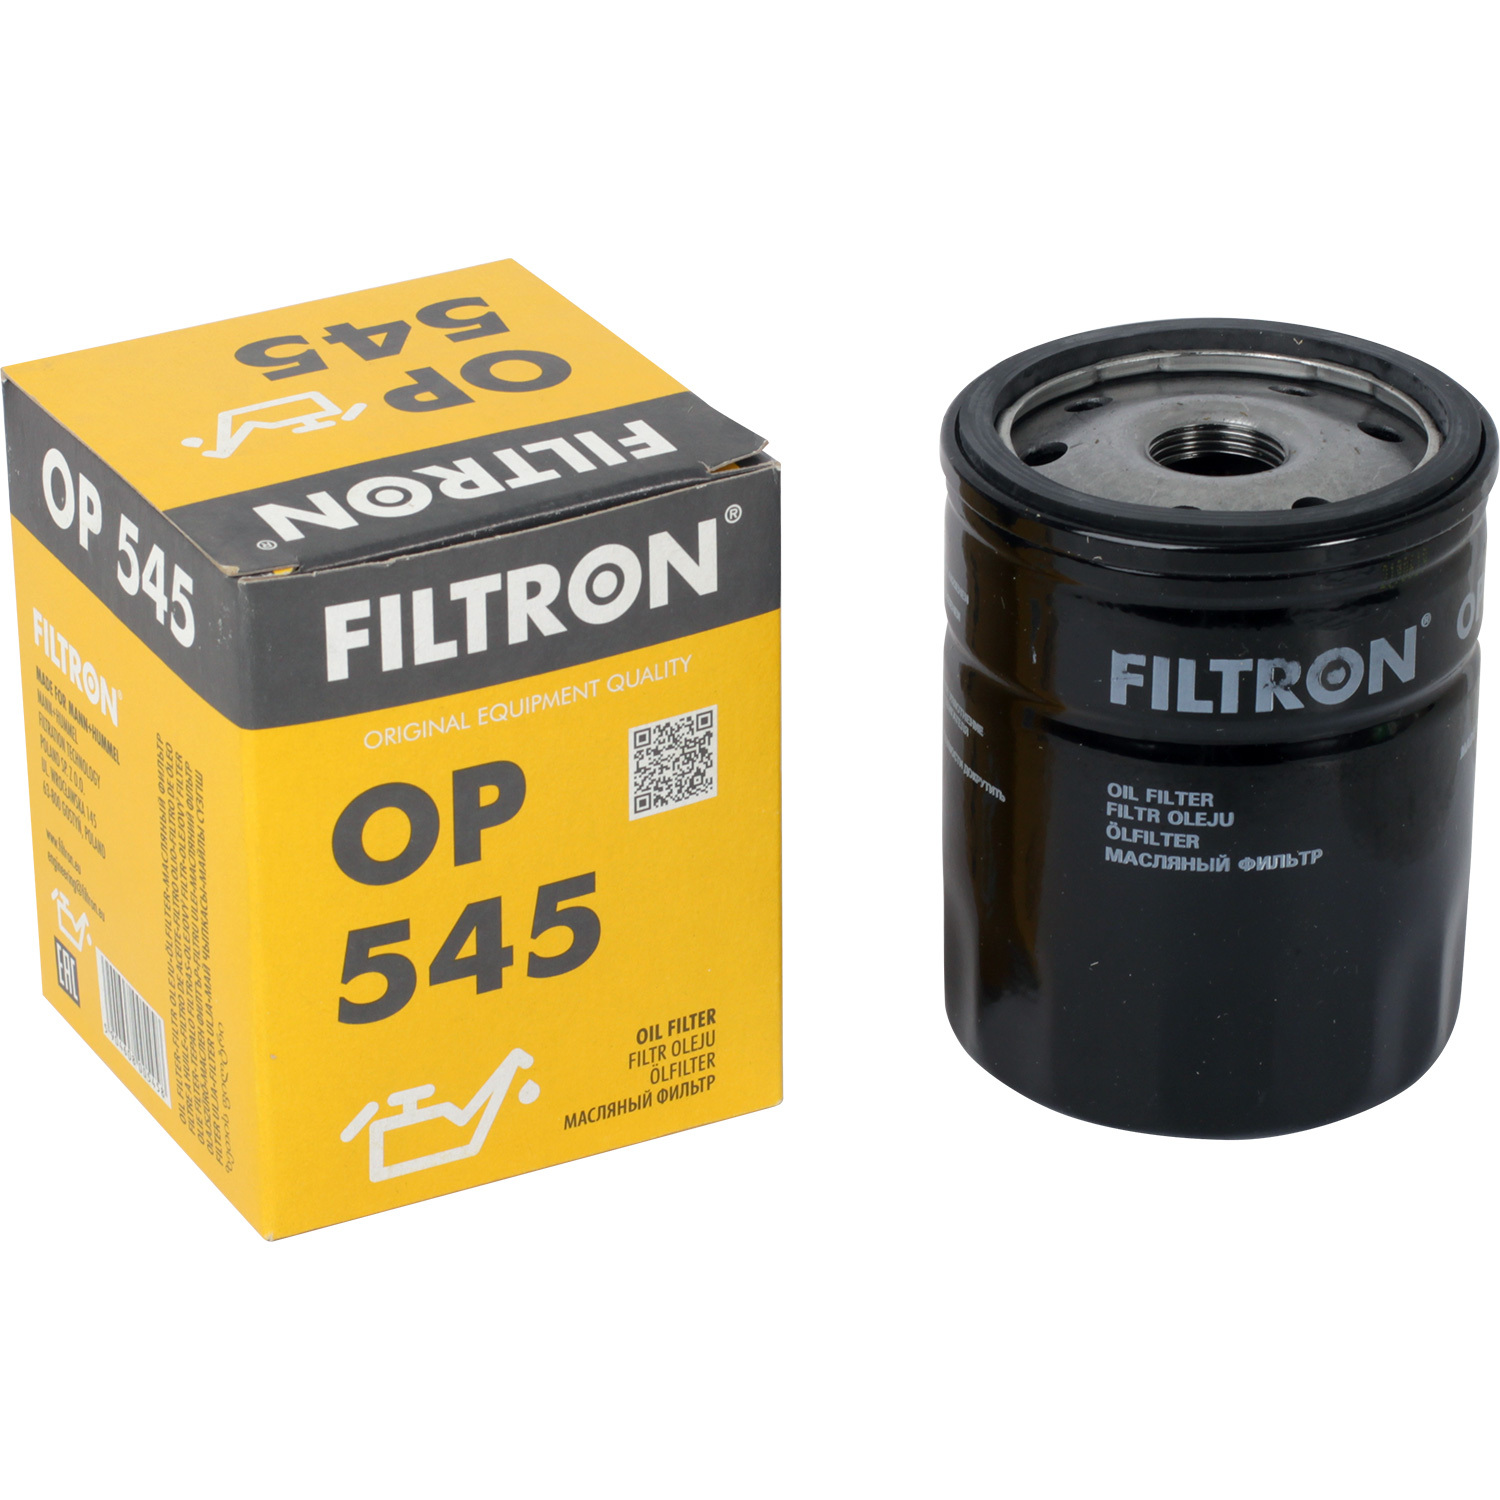 Фильтры Filtron Фильтр масляный Filtron OP545 фильтры filtron фильтр масляный filtron op572